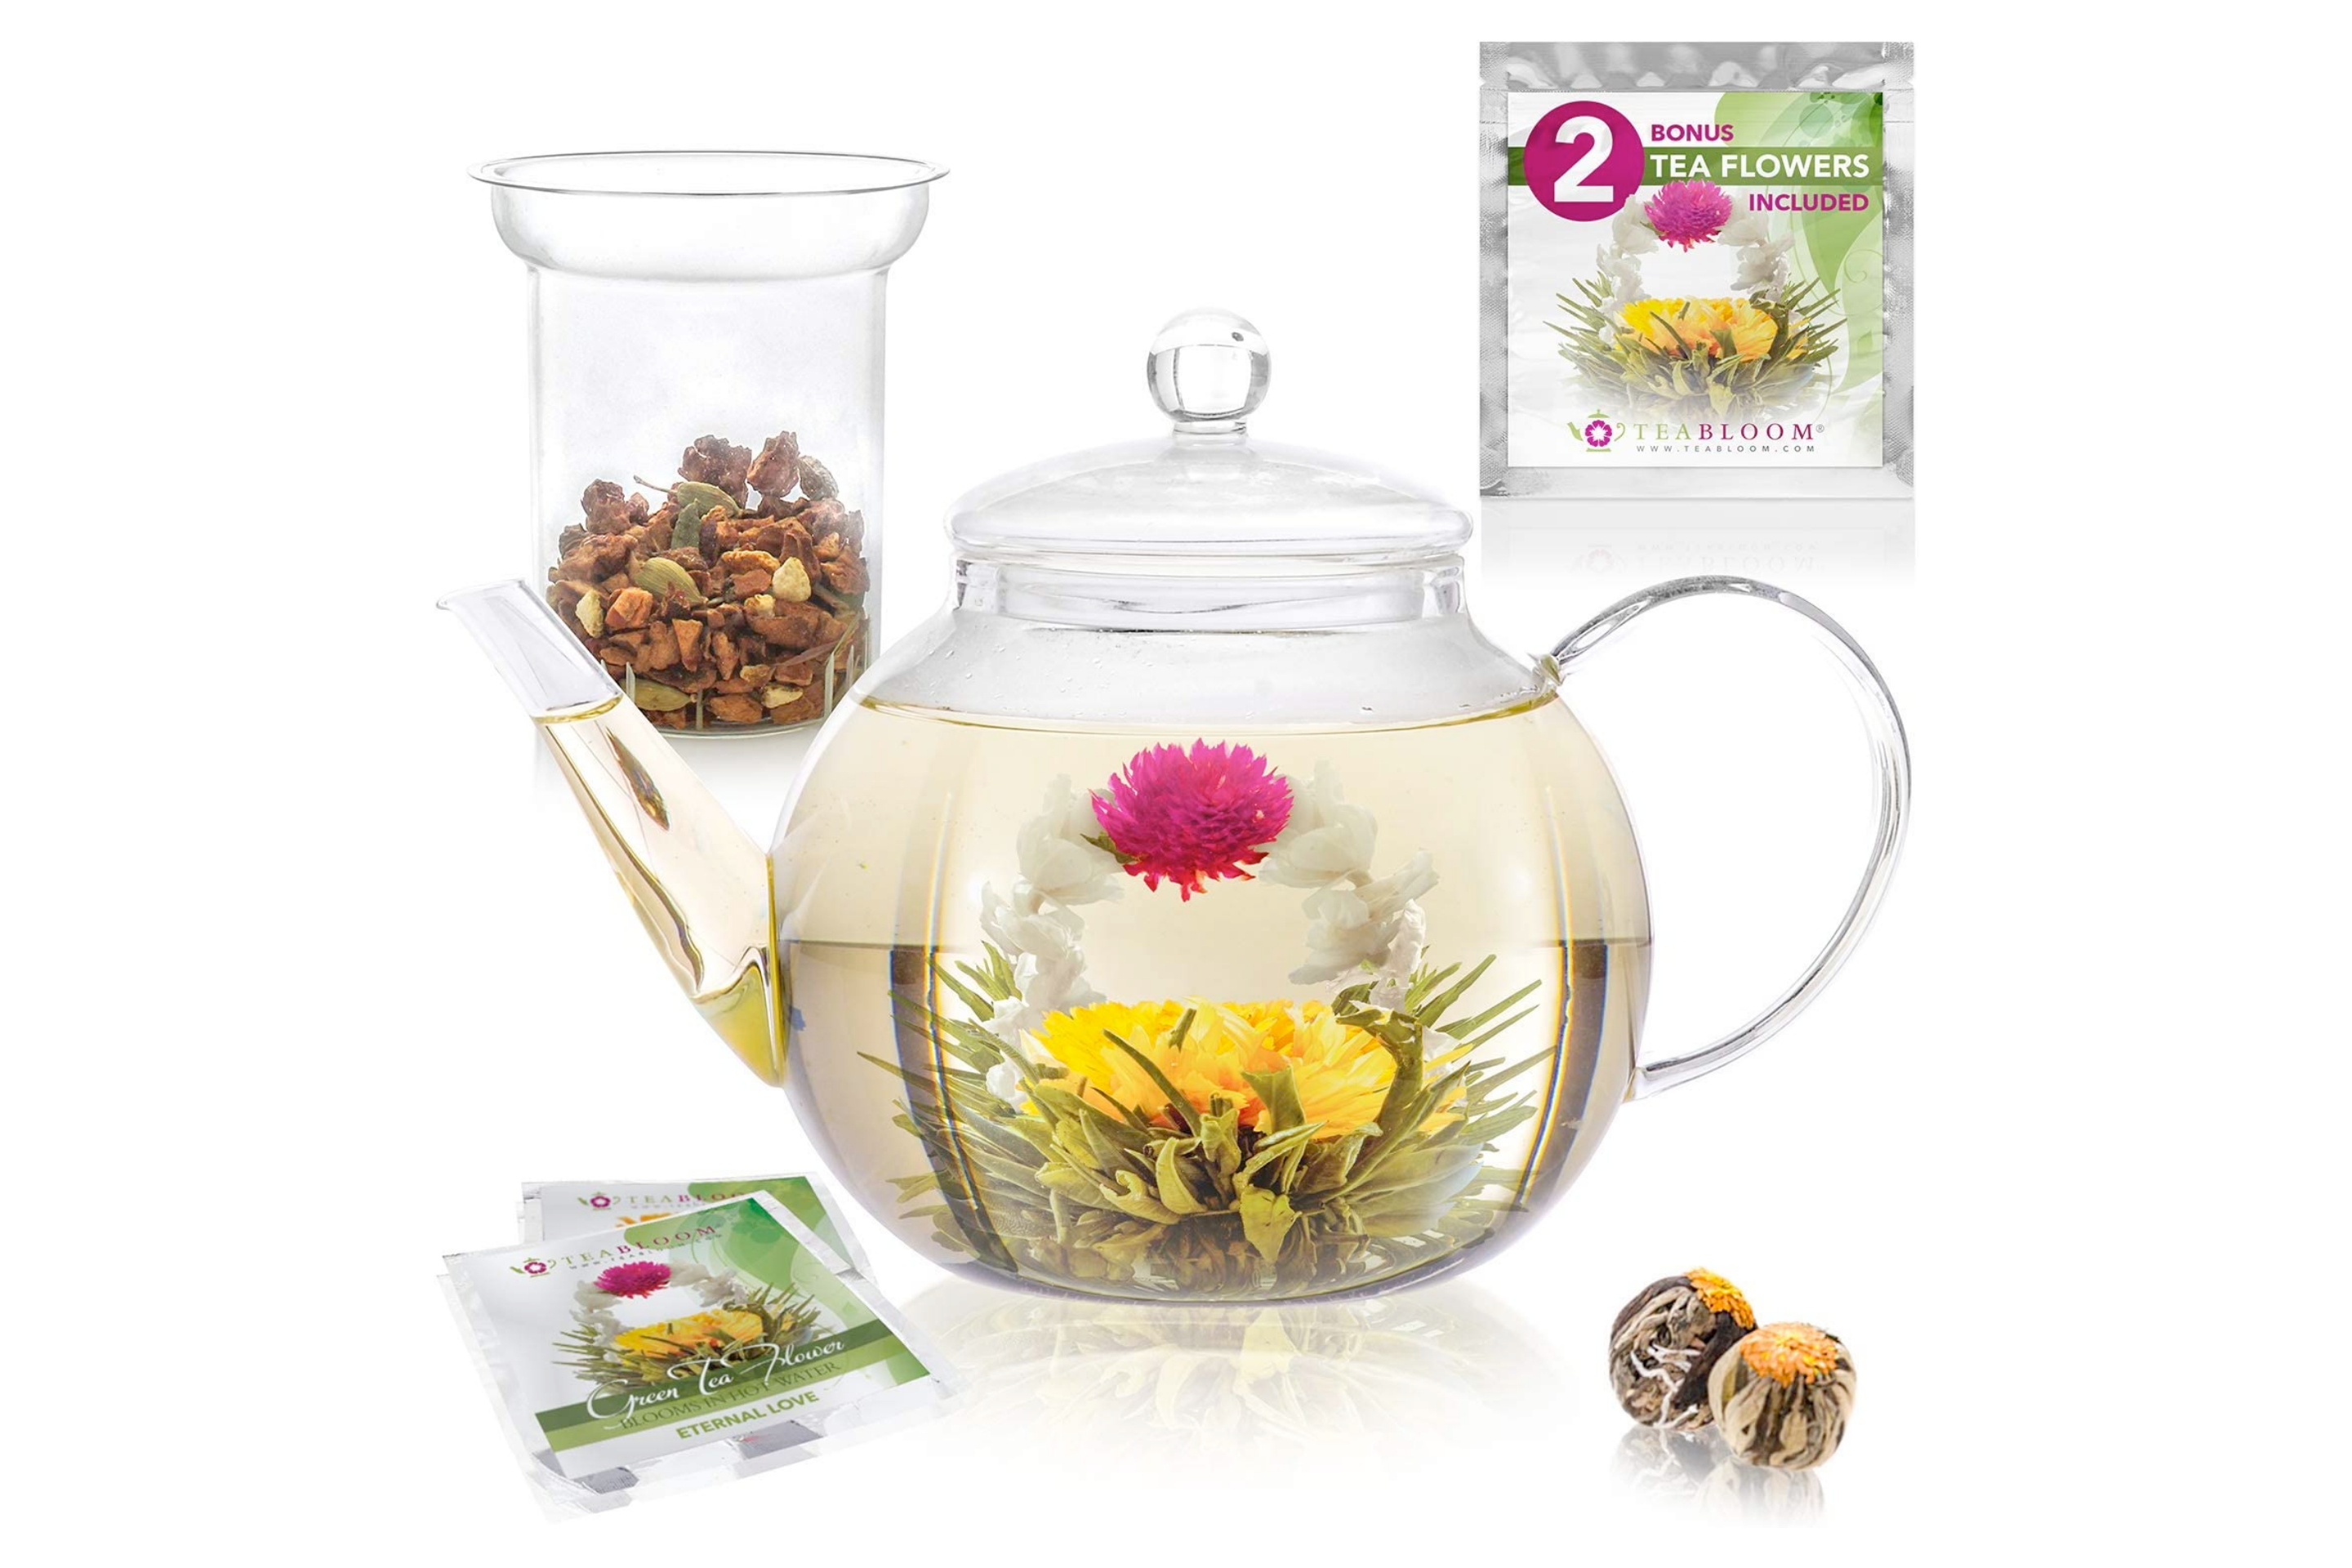 Glass Teapot, Teabloom